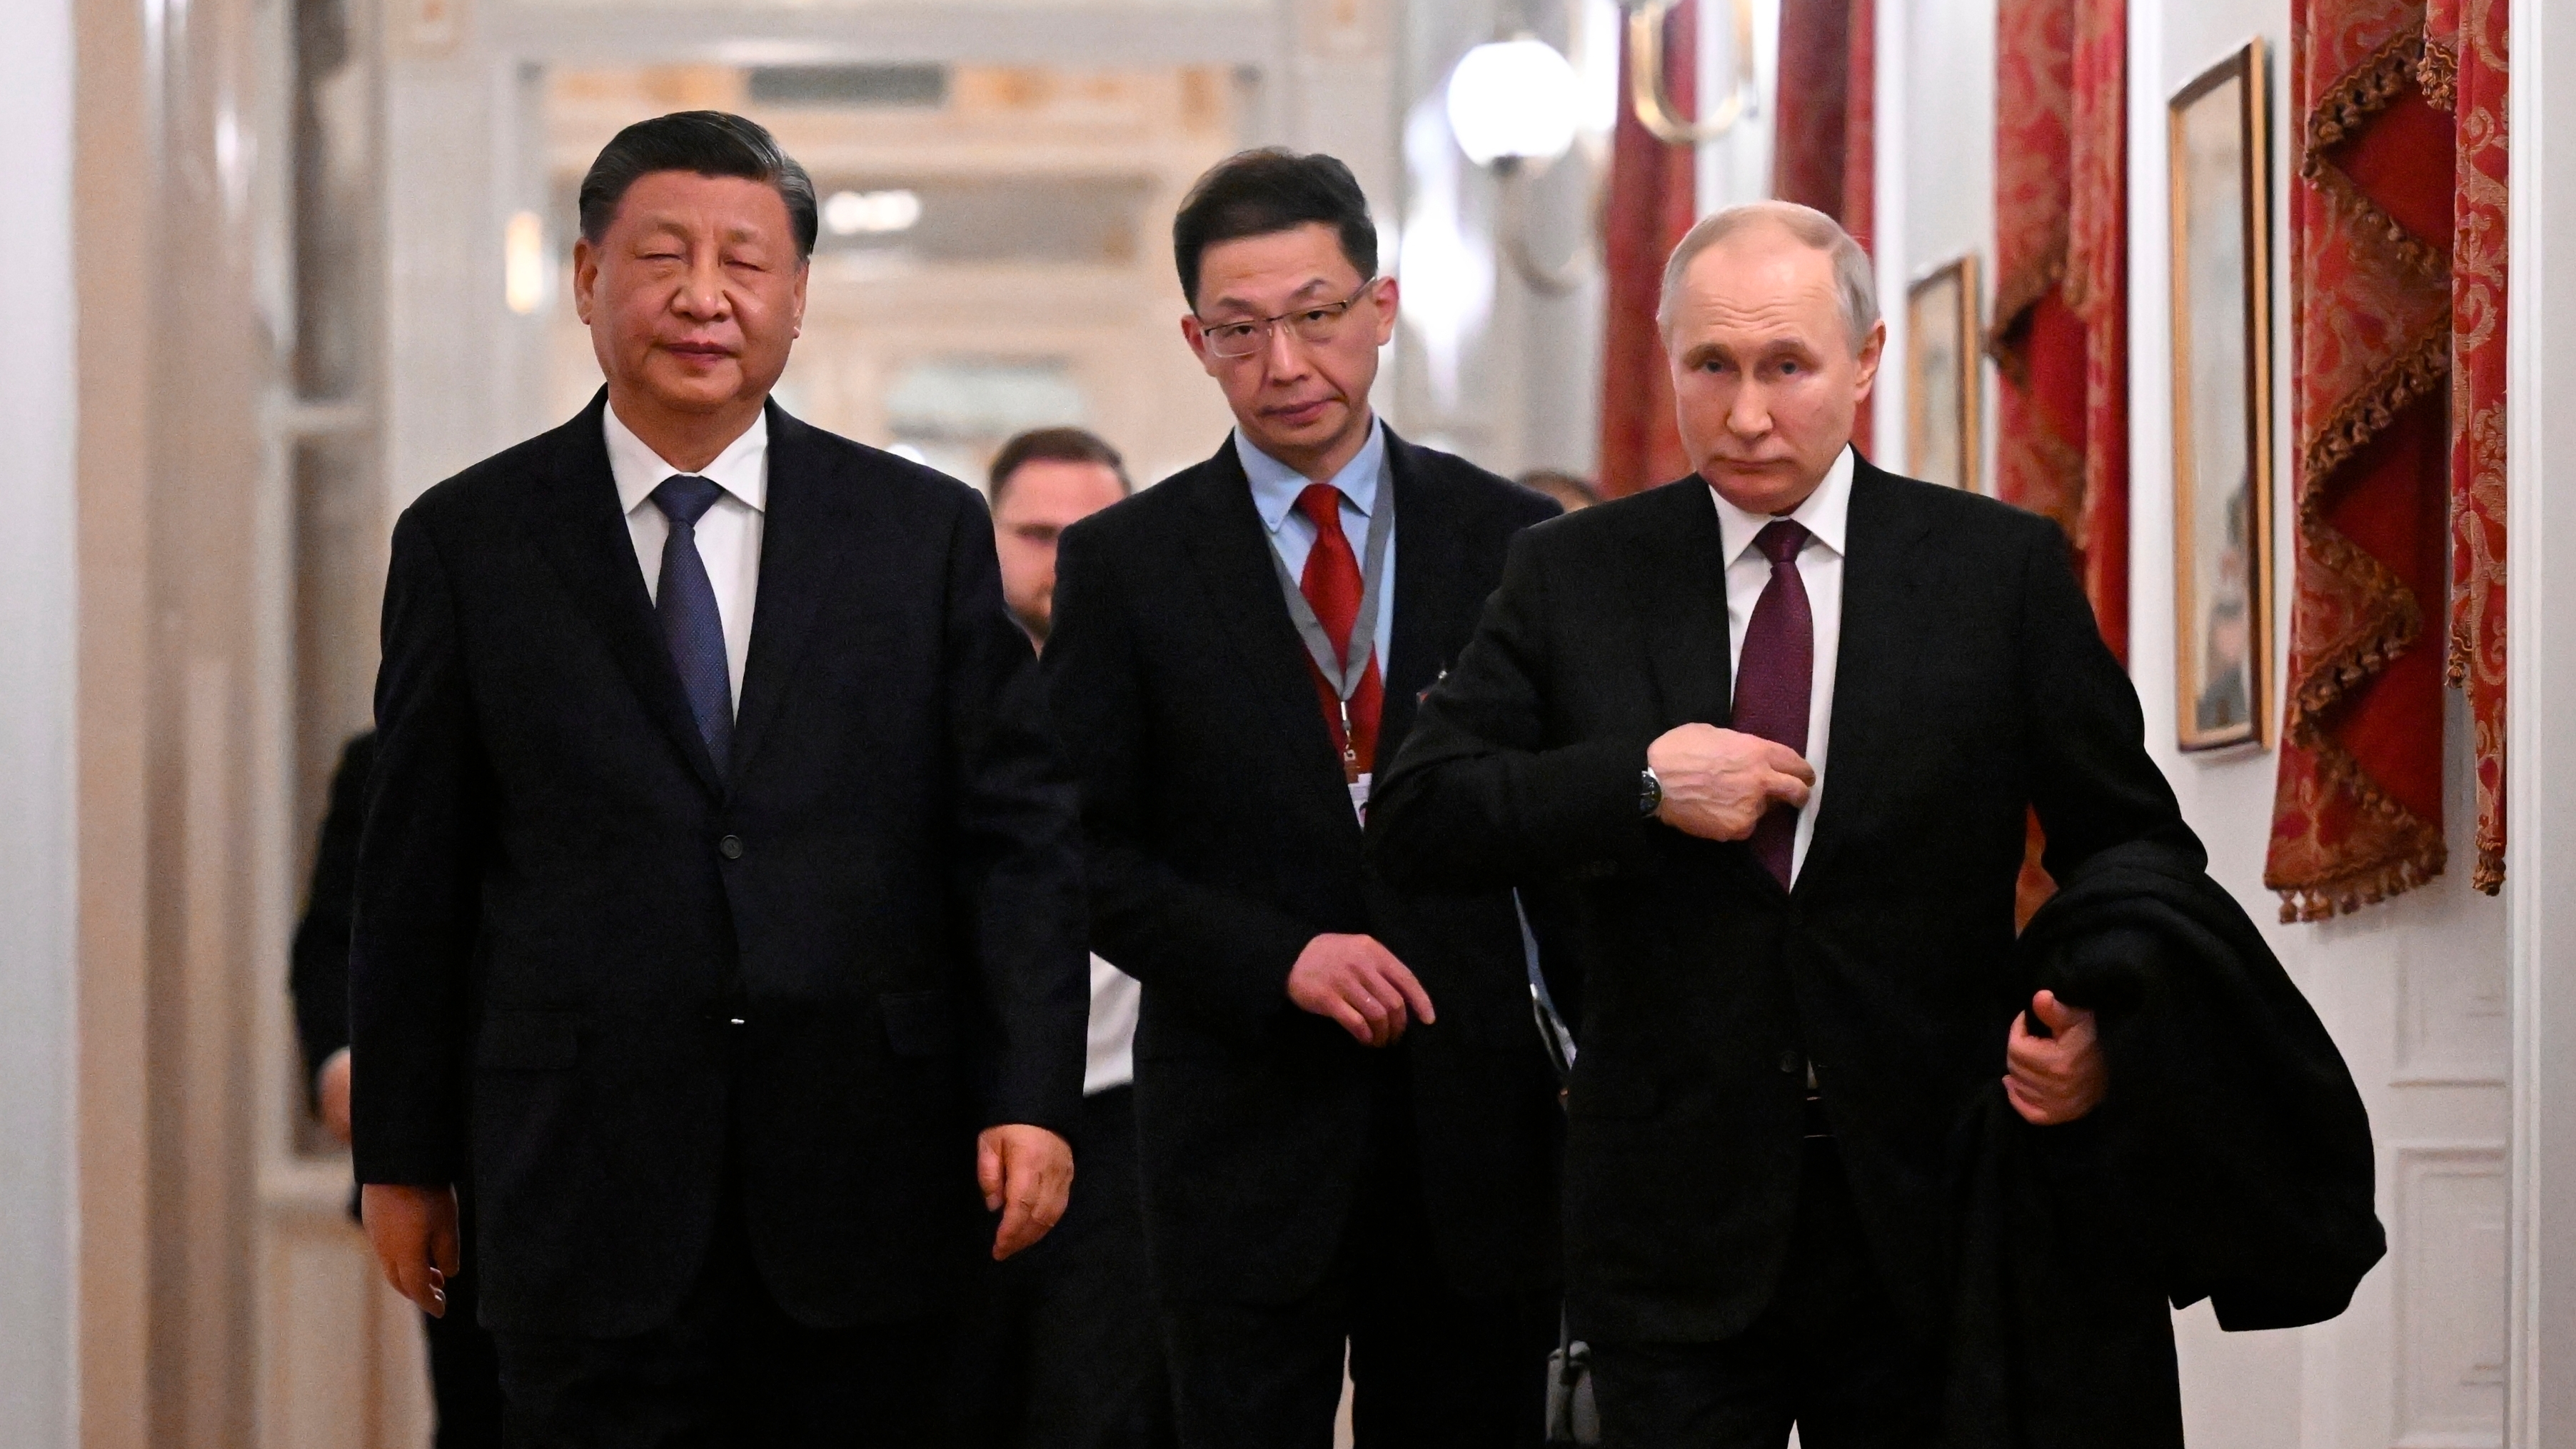 Durante su encuentro en Rusia Xi Jinping le manifestó a Putin que “la mayoría de los países apoya que se alivien las tensiones” en Ucrania